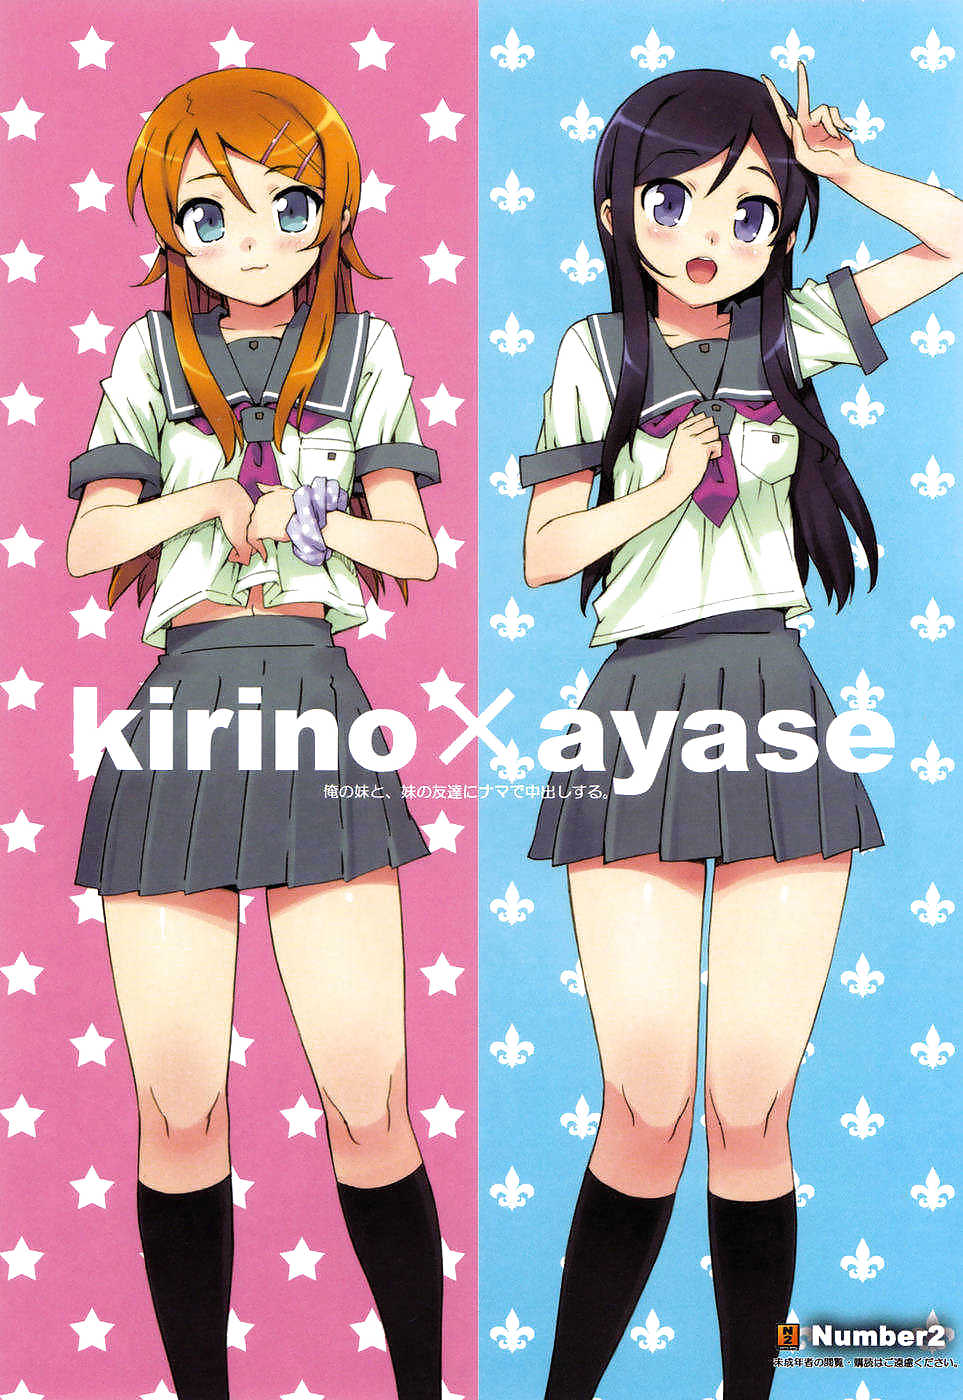 Kirino and Ayase